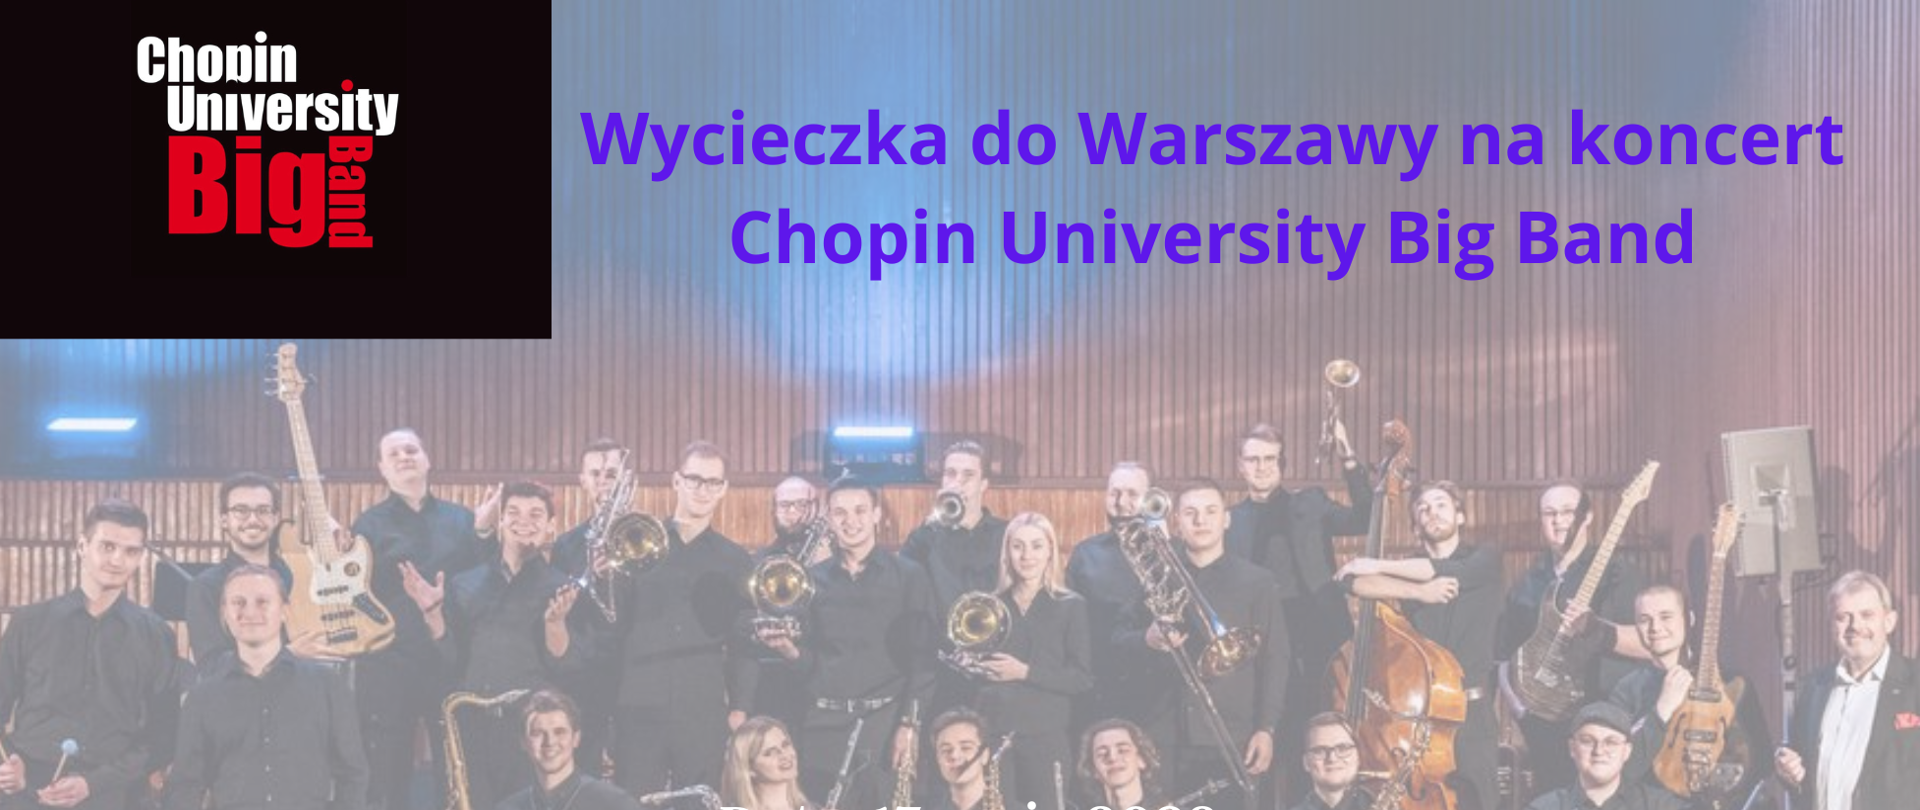 Plakat ze zdjęciem dużego zespołu big band w tle. Z lewej strony logo Chopin University Big Band - młode osoby odświętnie ubrane z instrumentami w ręku. Dużymi literami zapisane informacje o wycieczce do Warszawy na koncert.